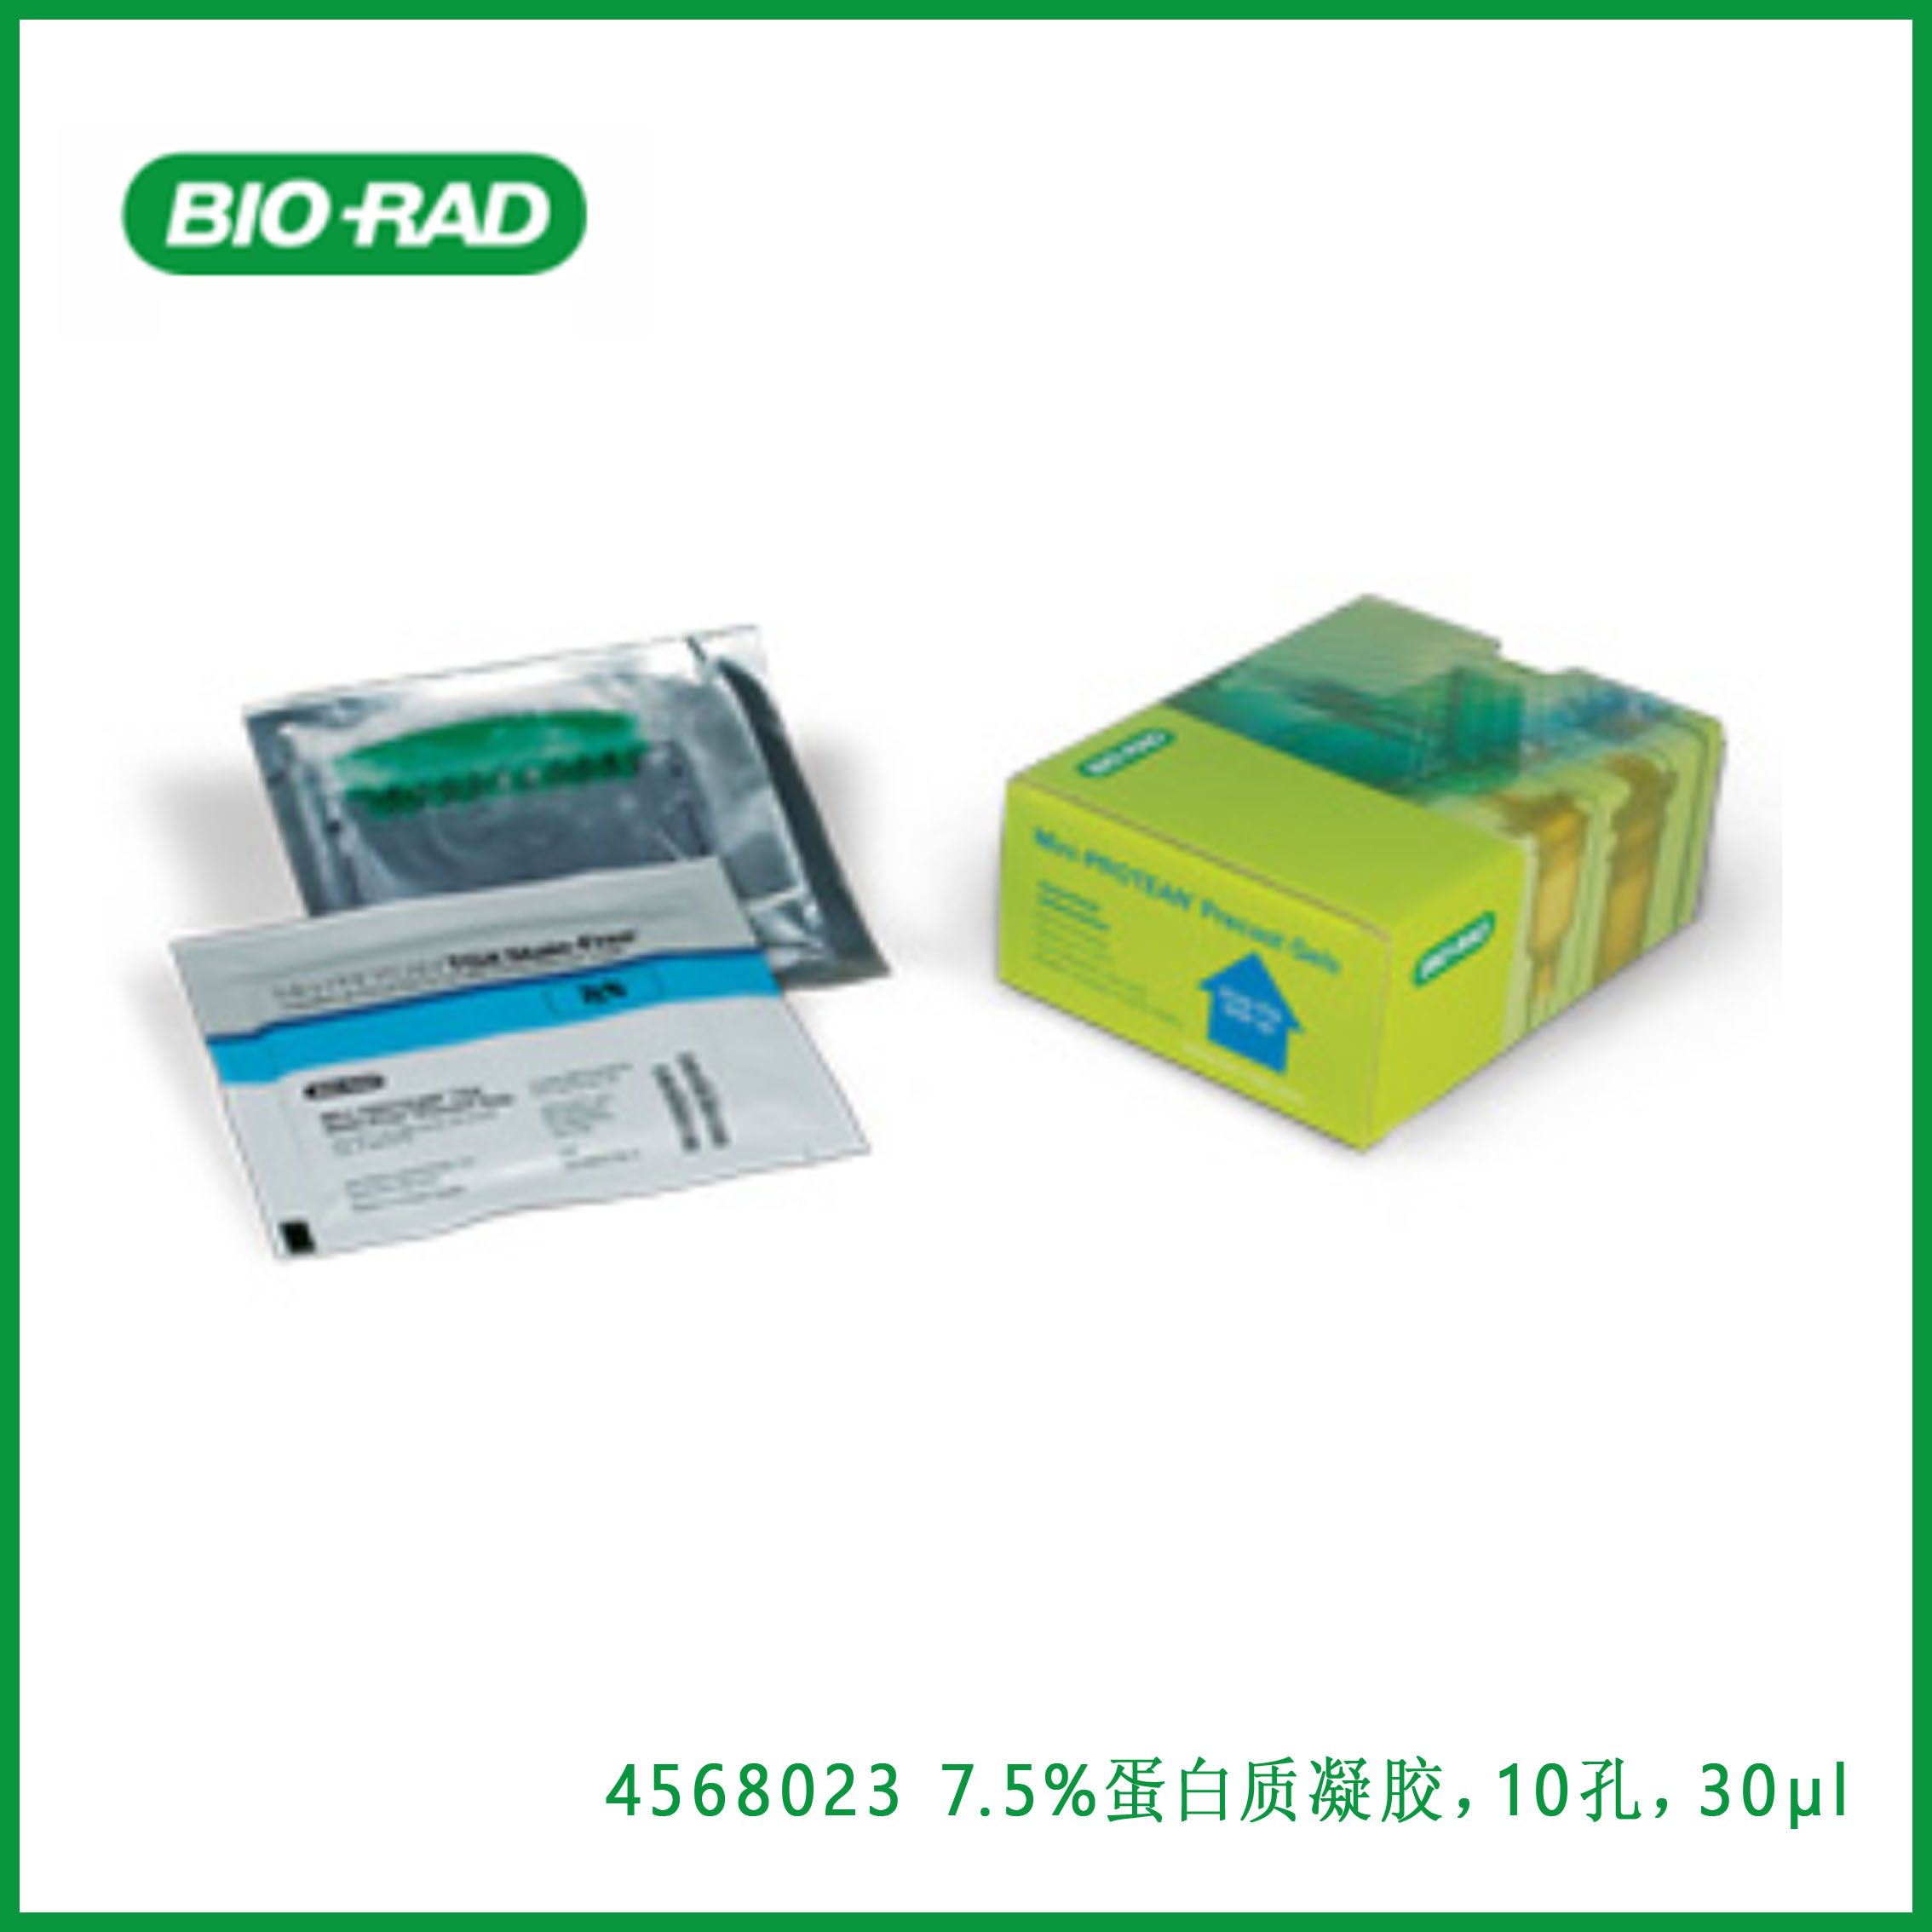 伯乐Bio-Rad4568023 7.5% Mini-PROTEAN® TGX Stain-Free™ Protein Gels, 10 well, 30 µl，7.5%Mini-PROTEAN®TGX无污渍™ 蛋白质凝胶，10孔，30µl，现货